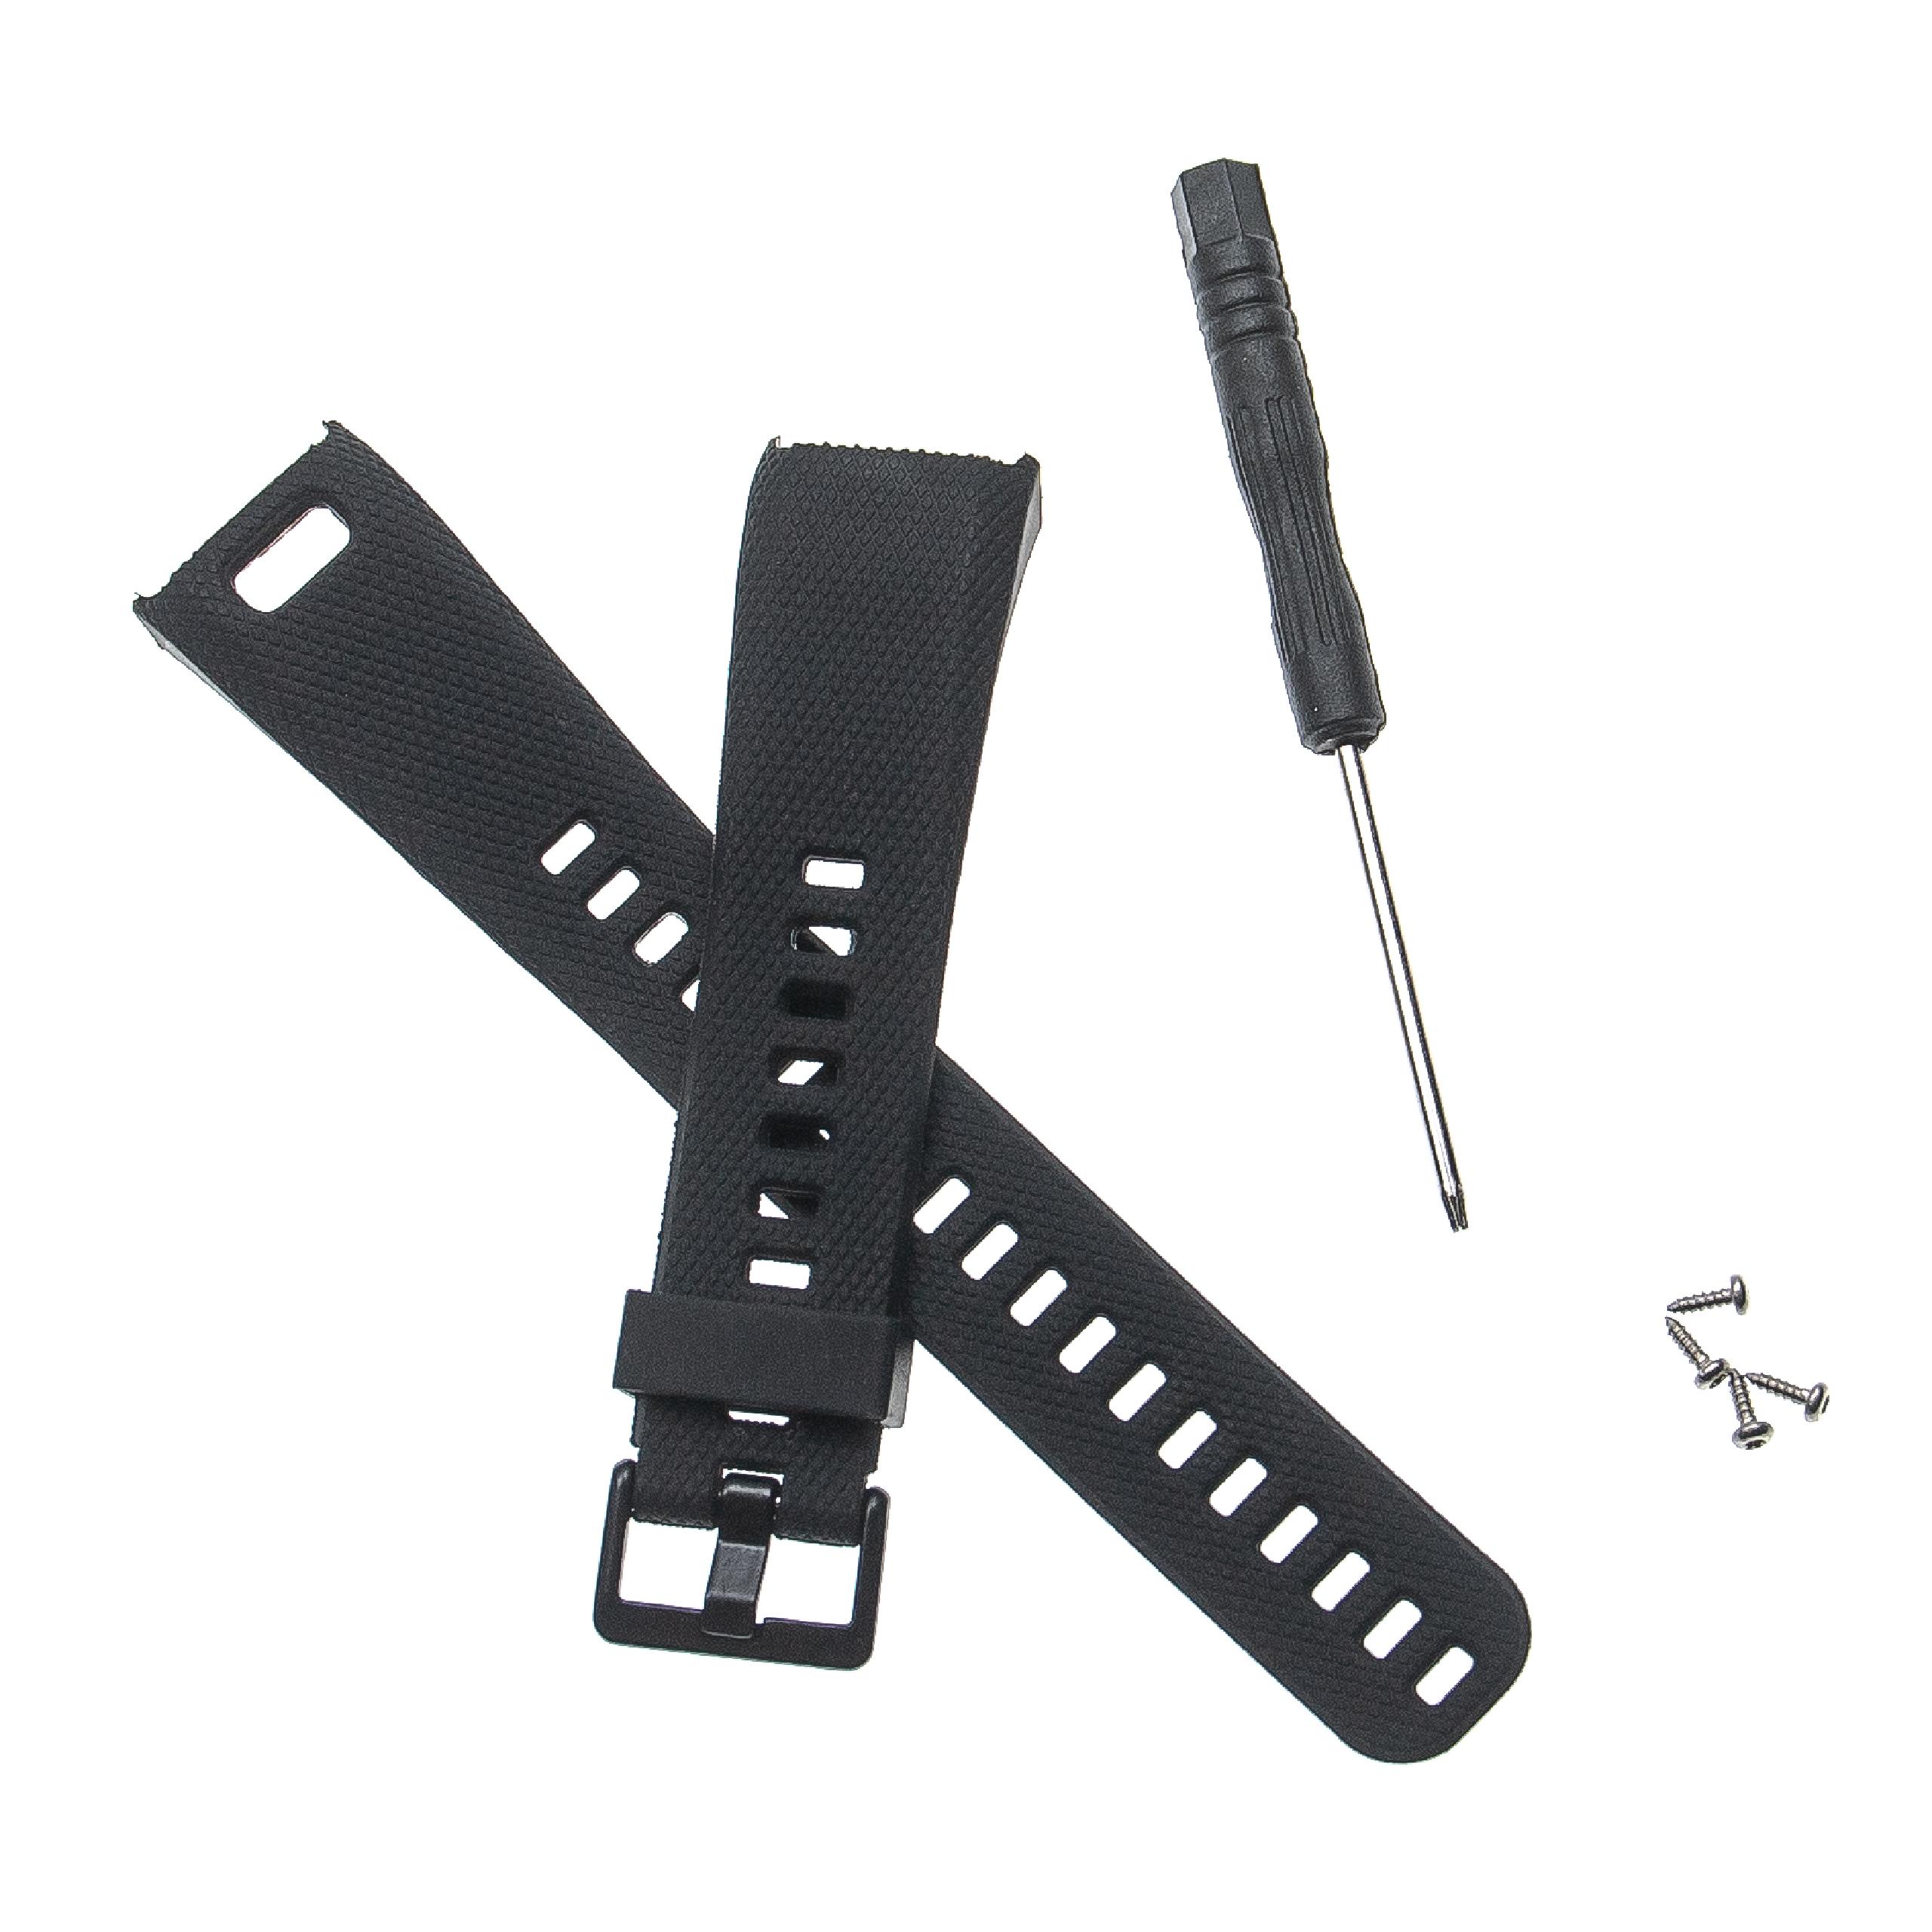 Bracelet pour montre intelligente Garmin Vivosmart - 12,7 + 8,8 cm de long, 20mm de large, TPU, noir